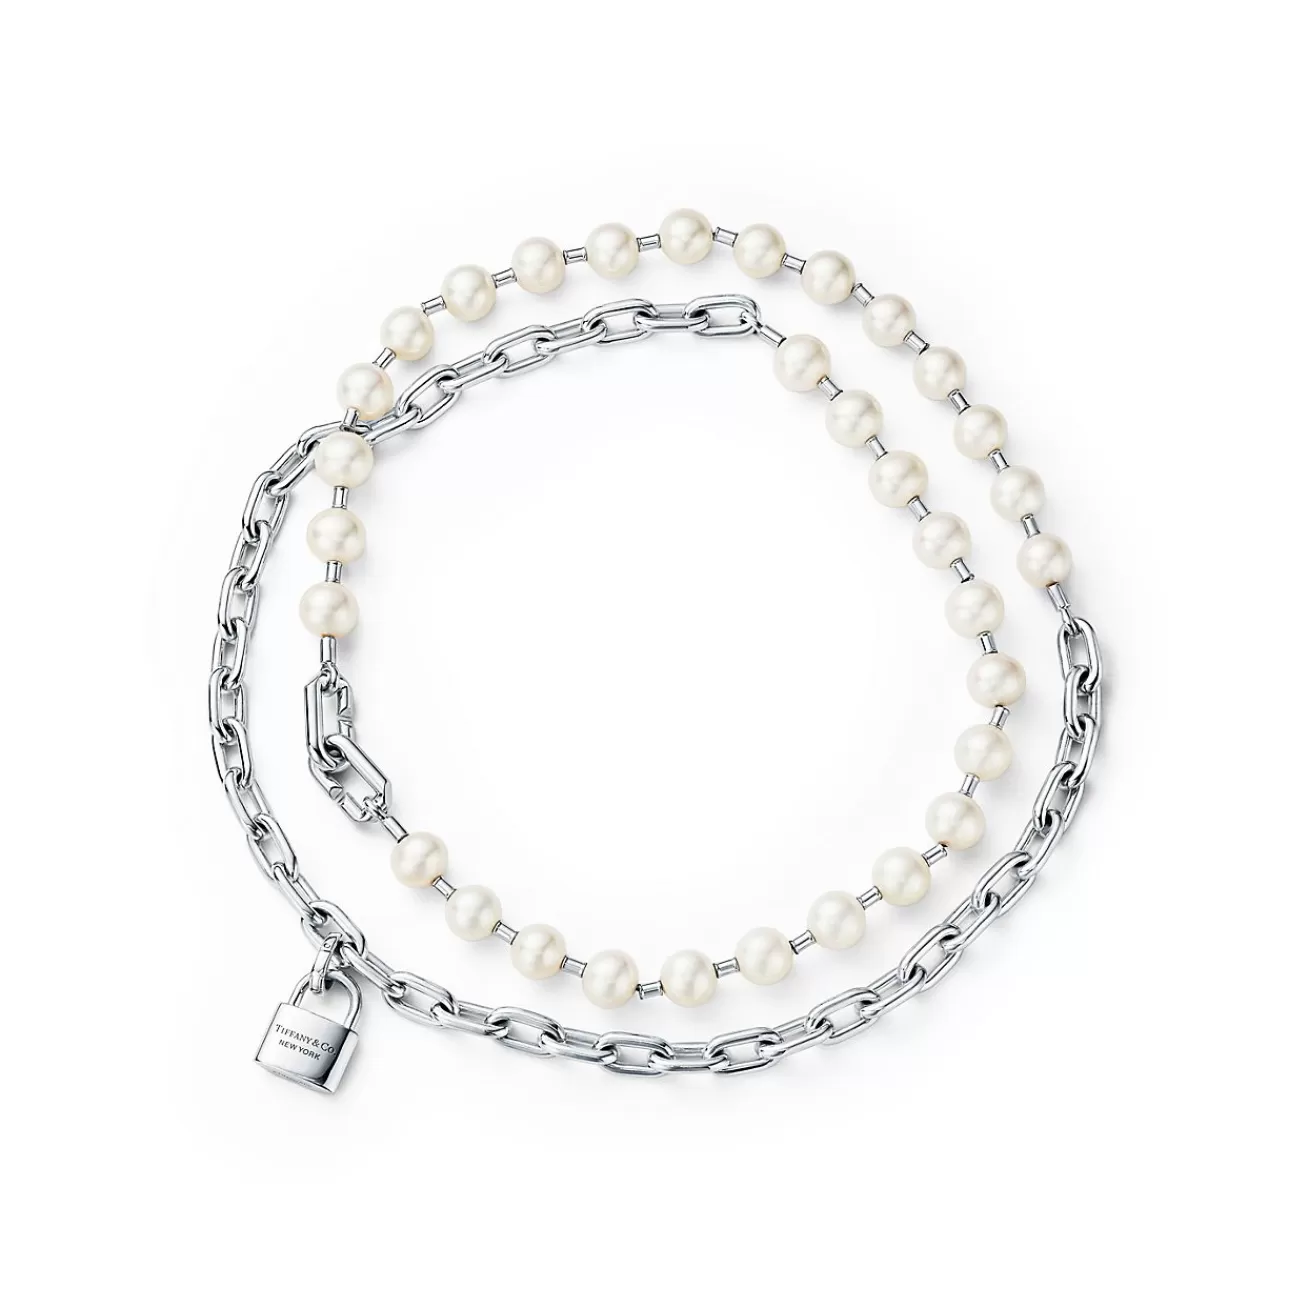 Tiffany & Co. Tiffany HardWear Pearl Lock Necklace in Silver, 9-10 mm | ^ Necklaces & Pendants | Men's Jewelry